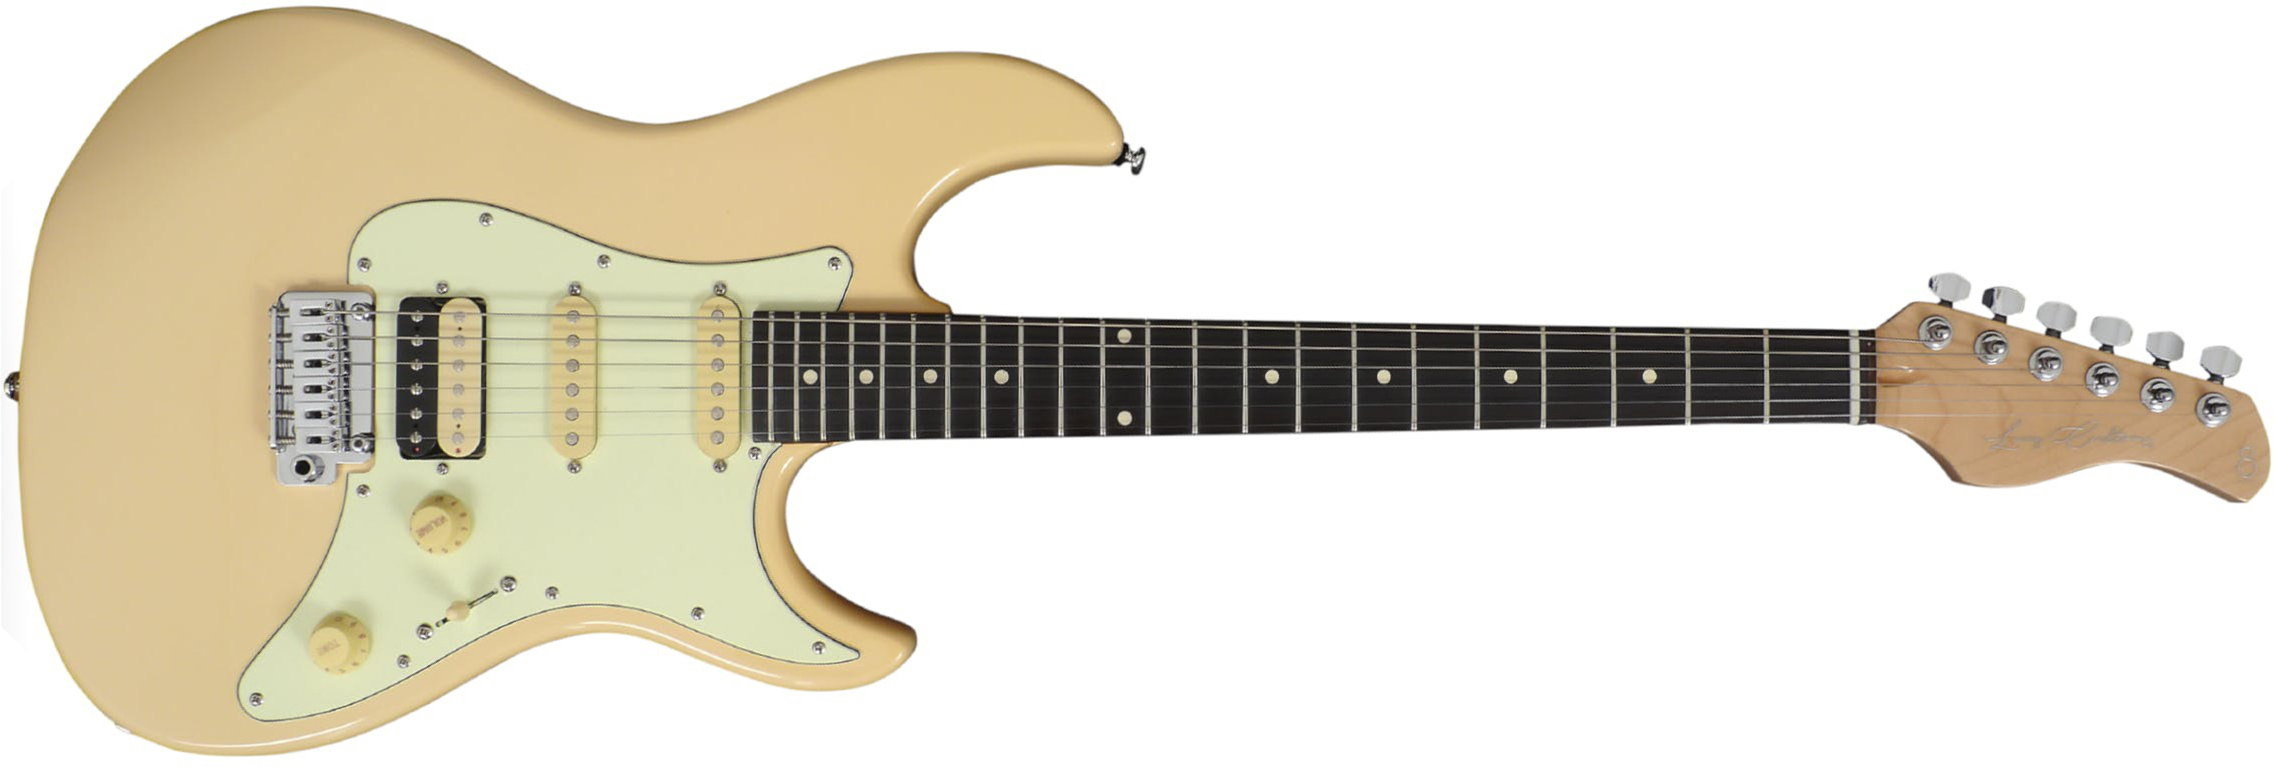 Sire Larry Carlton S3 Signature Hss Trem Rw - Vintage White - Elektrische gitaar in Str-vorm - Main picture